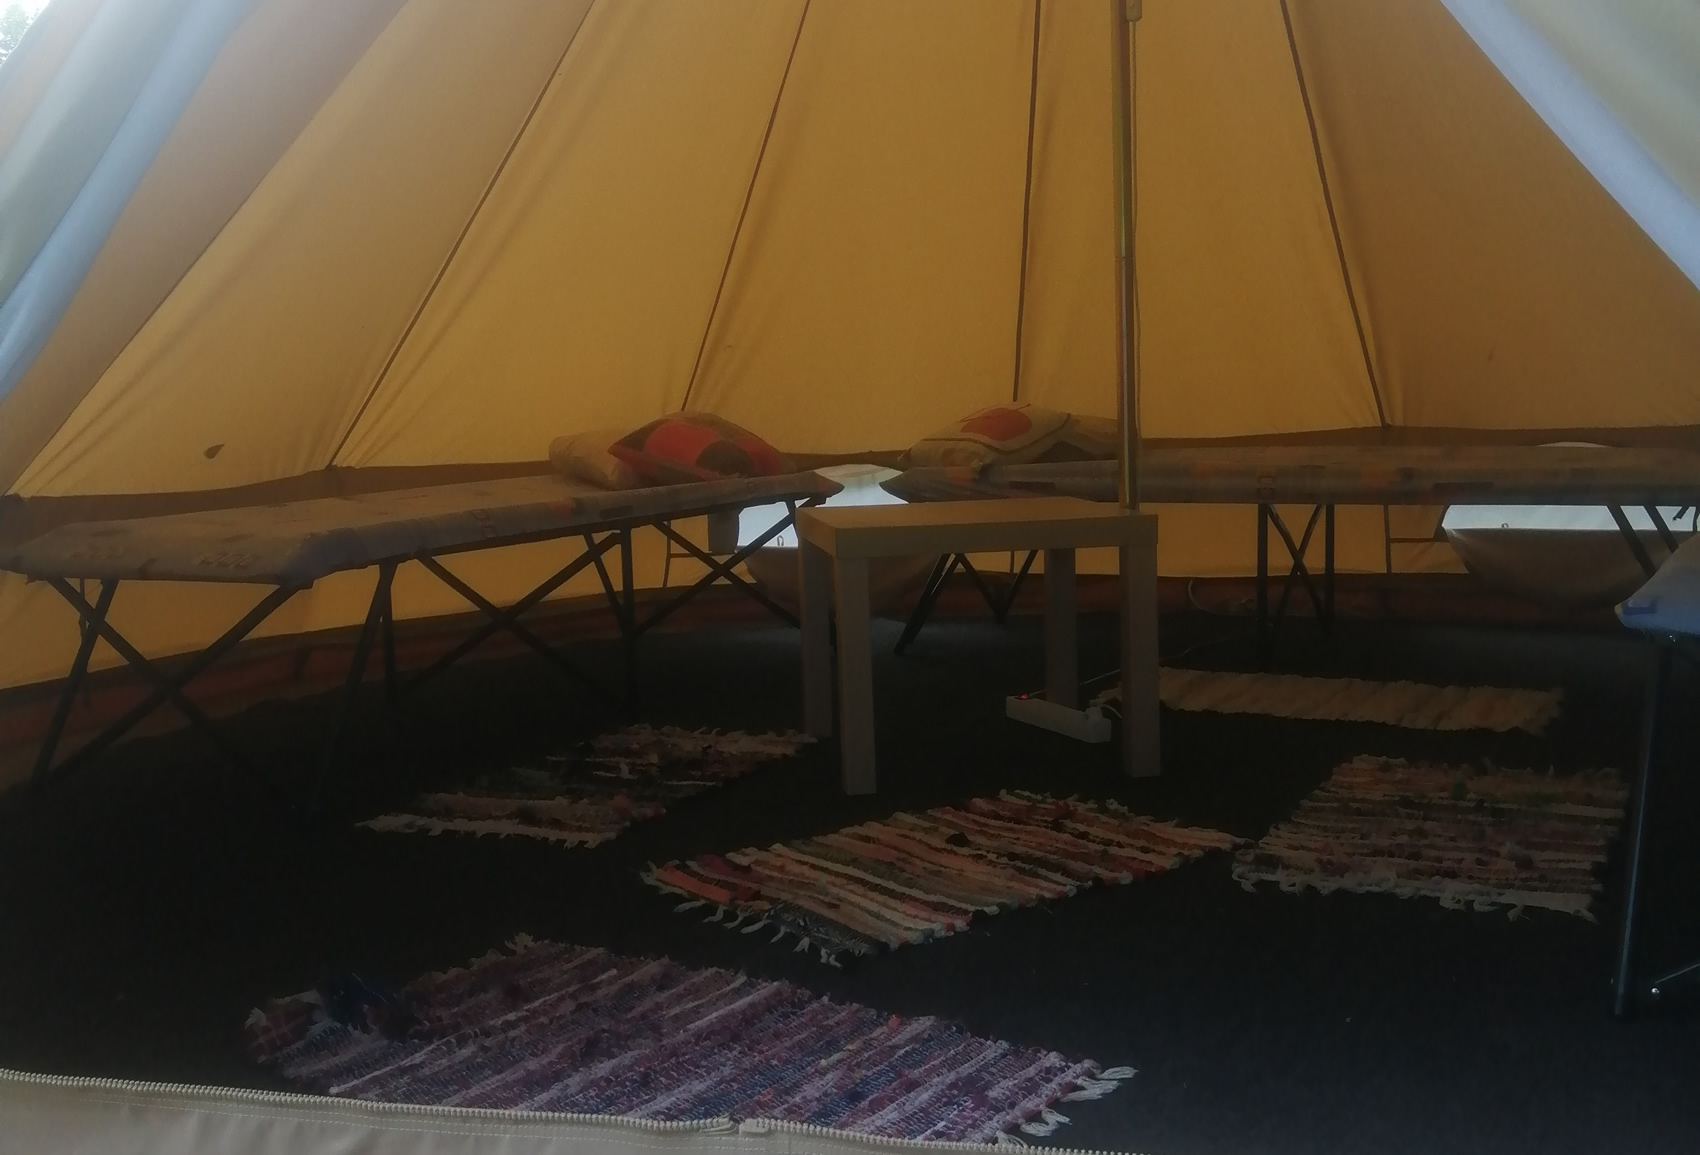 Šator za 3 osobe / Tent for 3 people